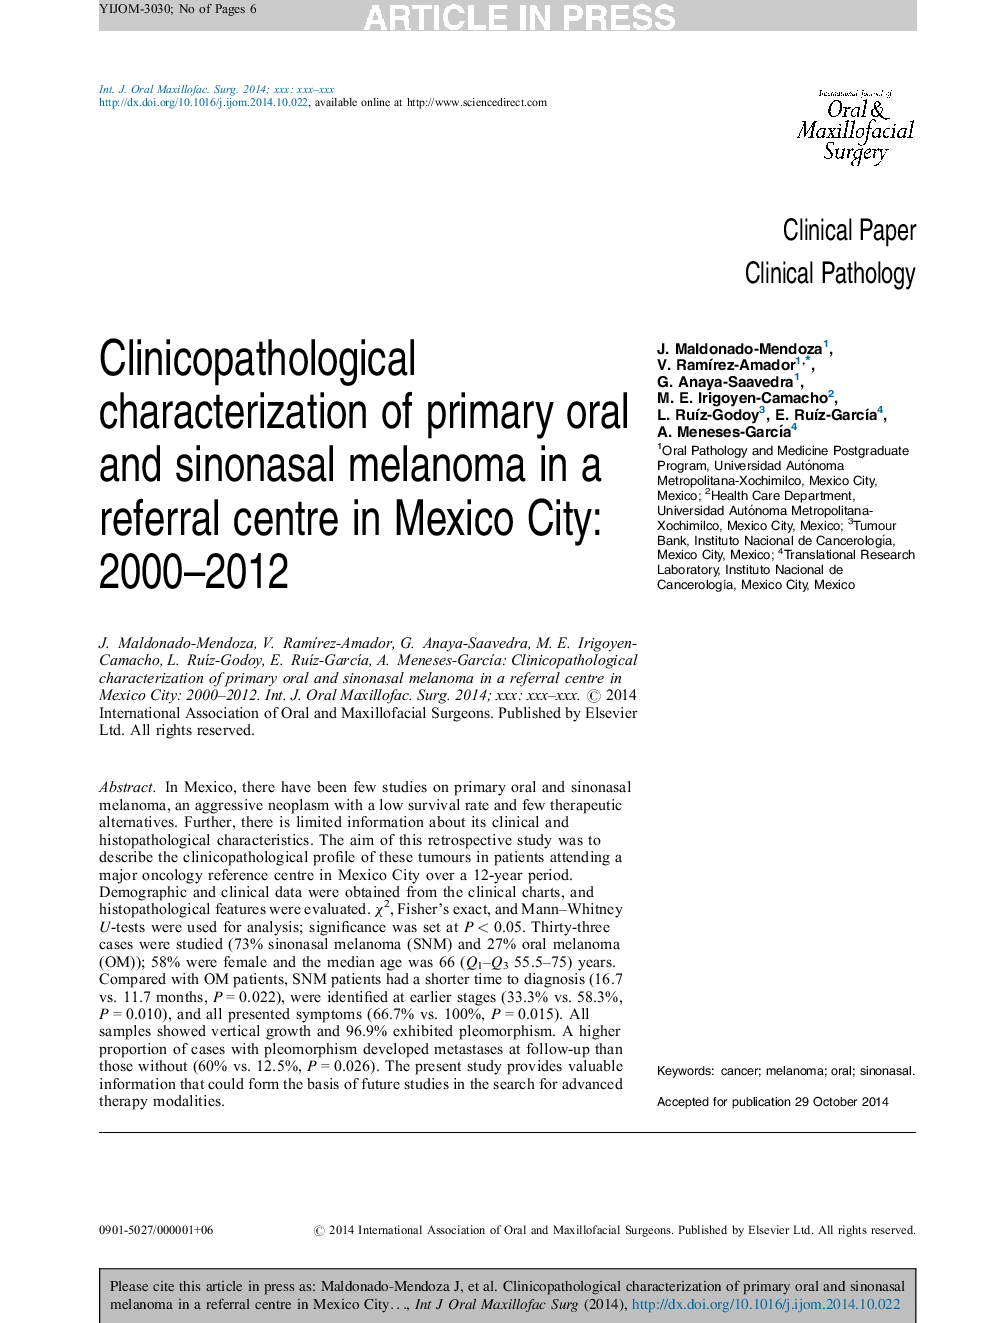 مشخصات کلینیکوپاتولوژیک ملانوم اولیه دهان و سینونال در مرکز مرجع در مکزیک سیتی: 2000-2012 